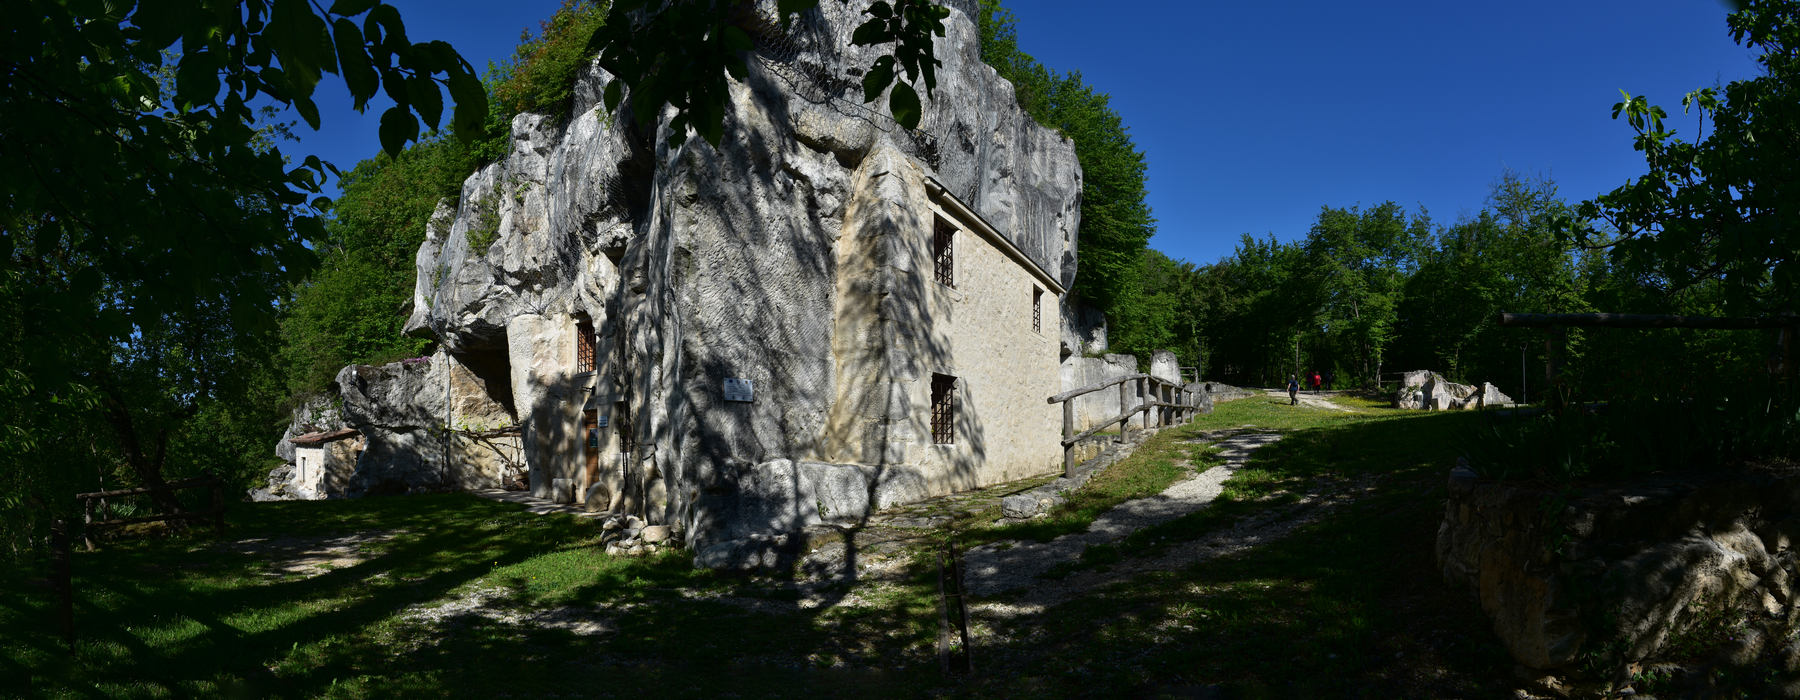 Casa rupestre alla Sengia dei Meoni a Zovencedo, nei Monti Berici